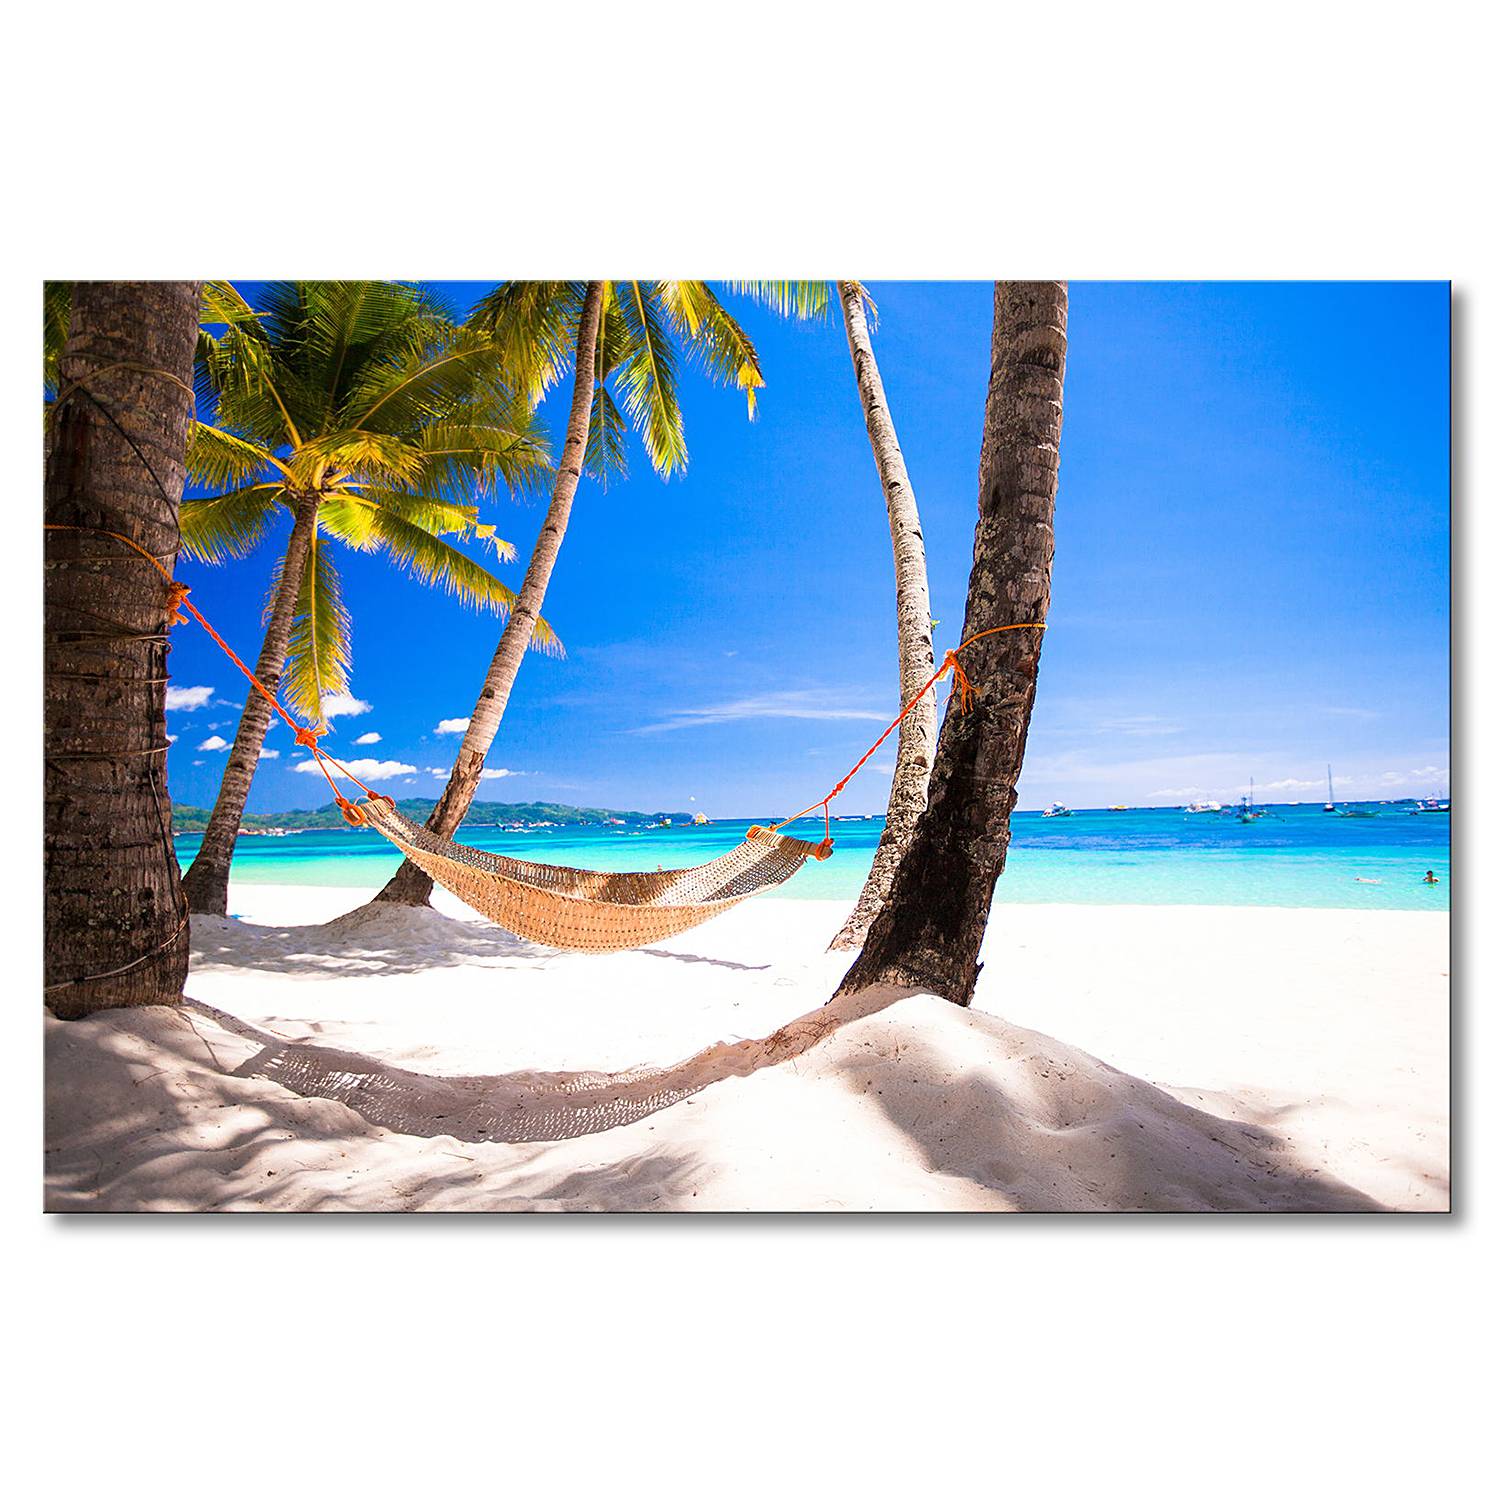 Strandbilder für Urlaubsfeeling online kaufen home24 